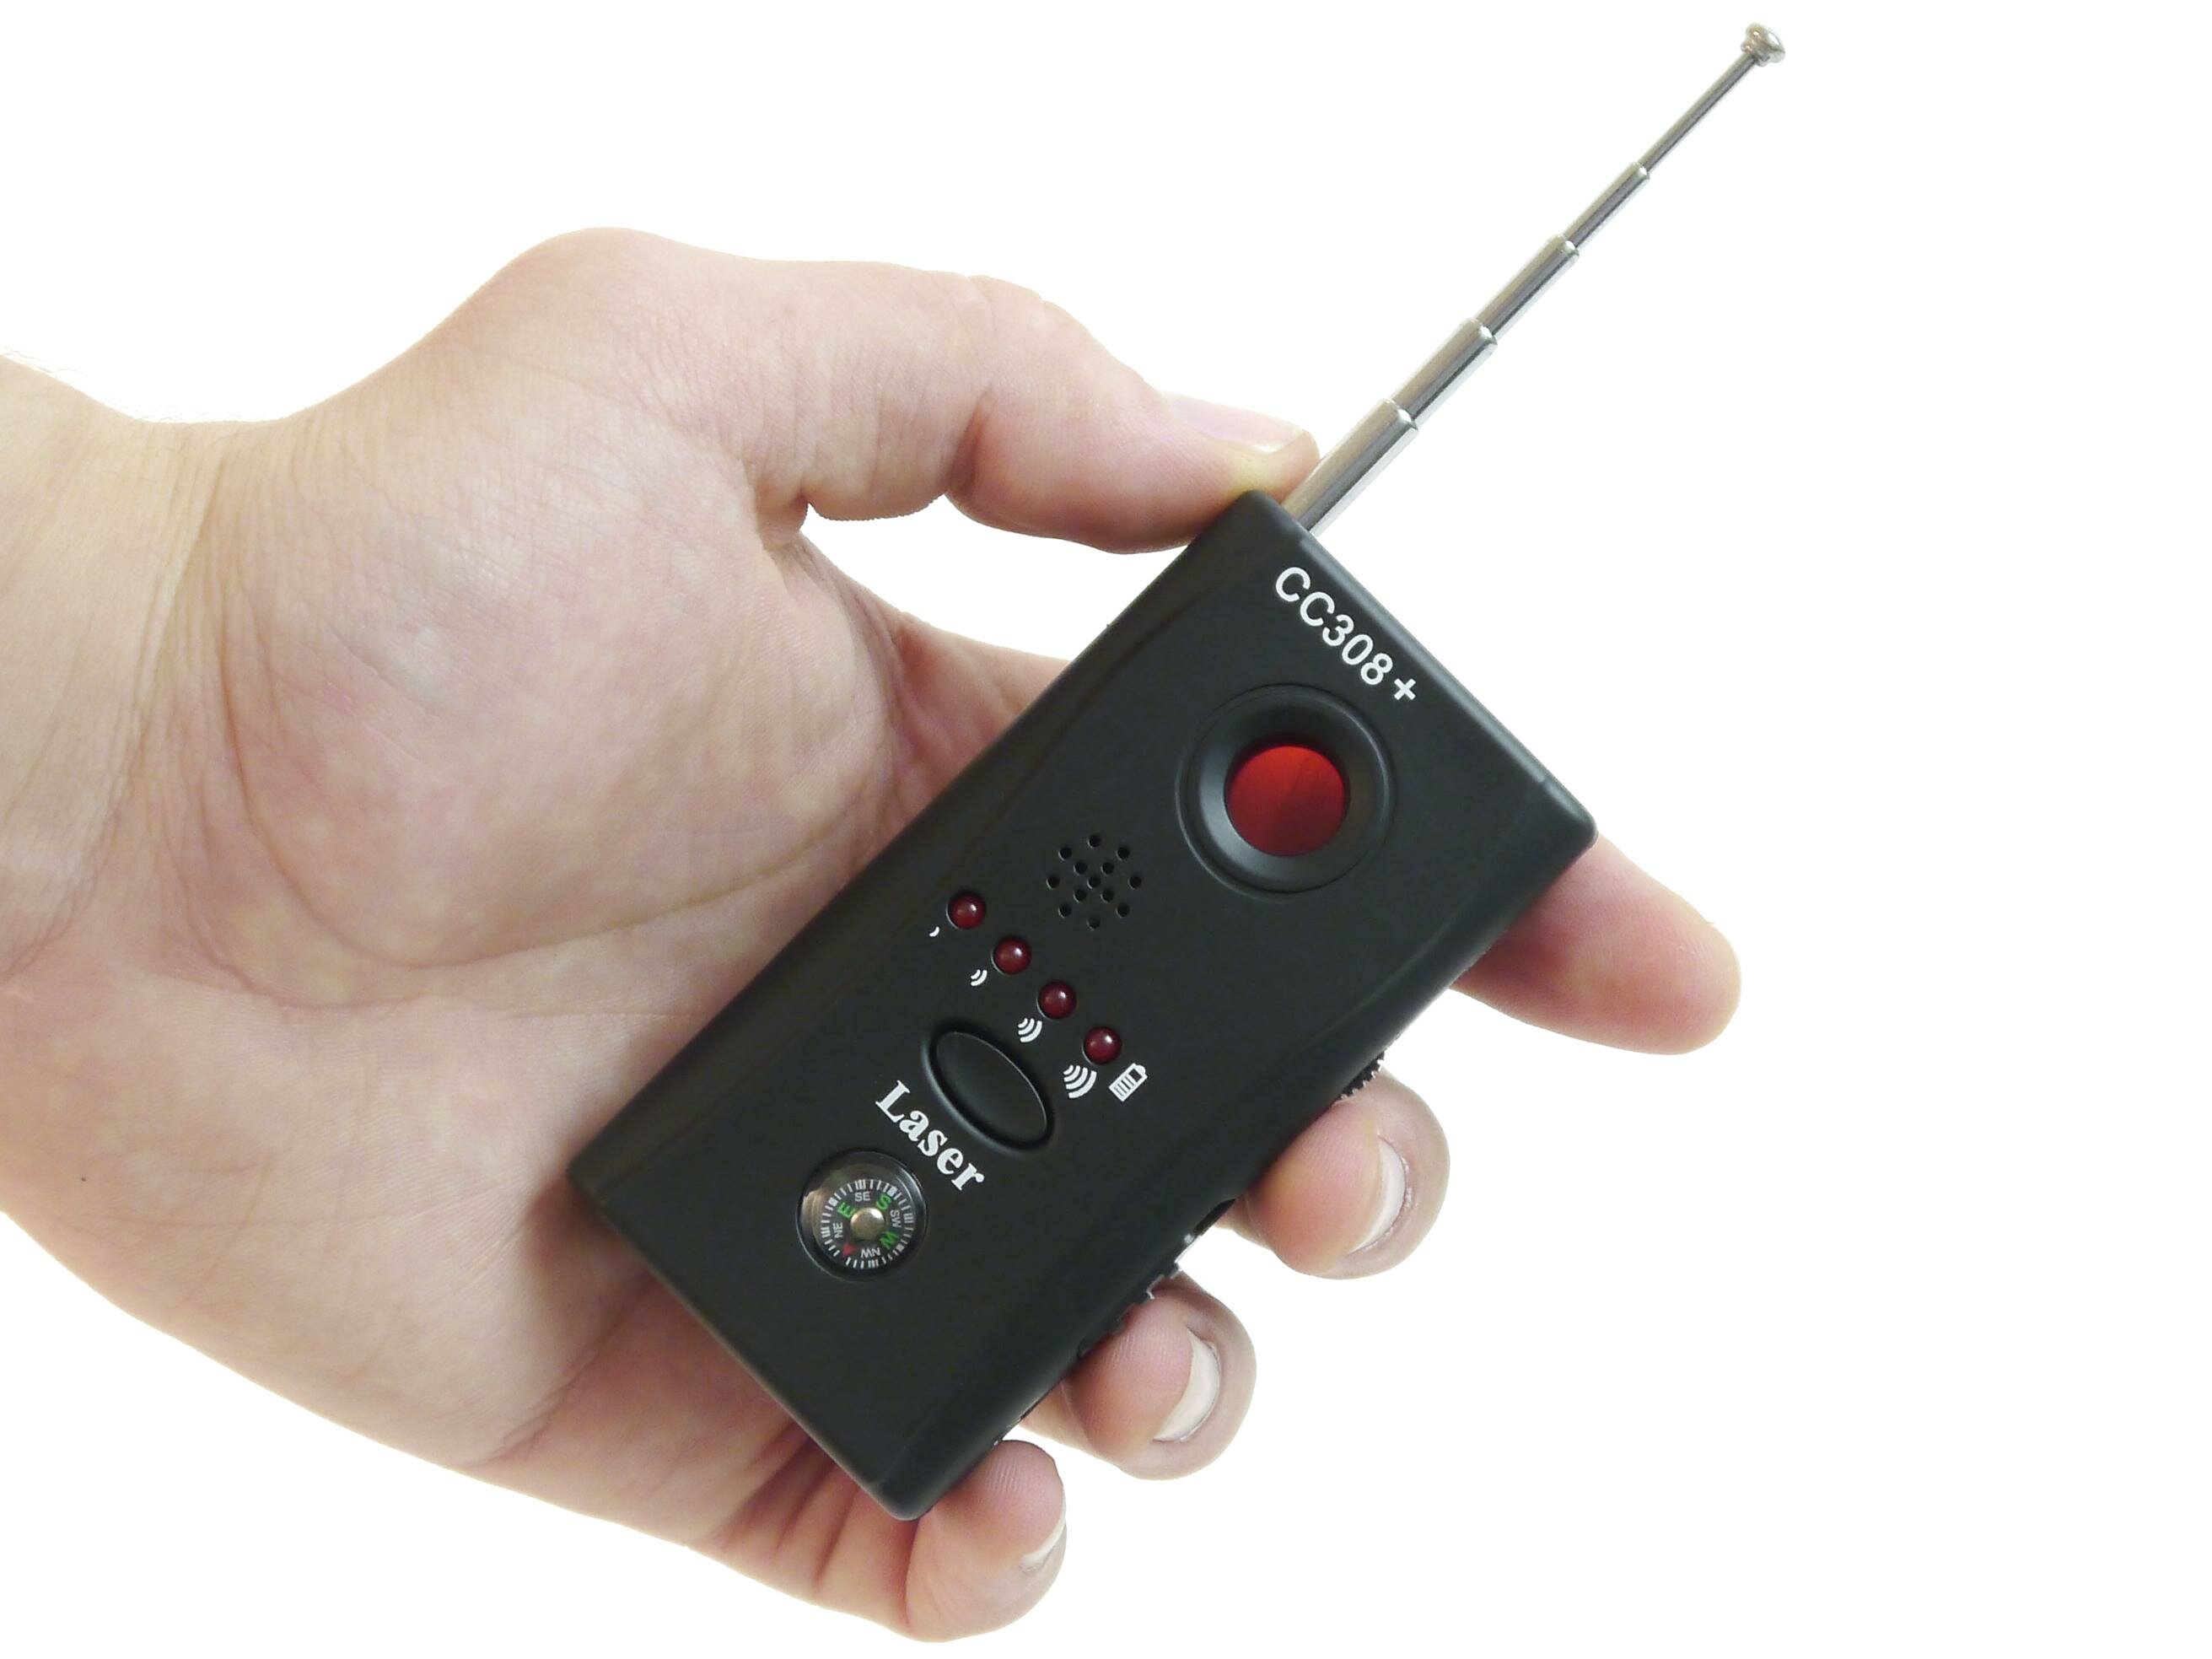 Антижучок (детектор жучков) - Antibug Hunter Plus (W2871RU) - обнаружение жучков / поиск жучков для прослушки / обнаружение камер